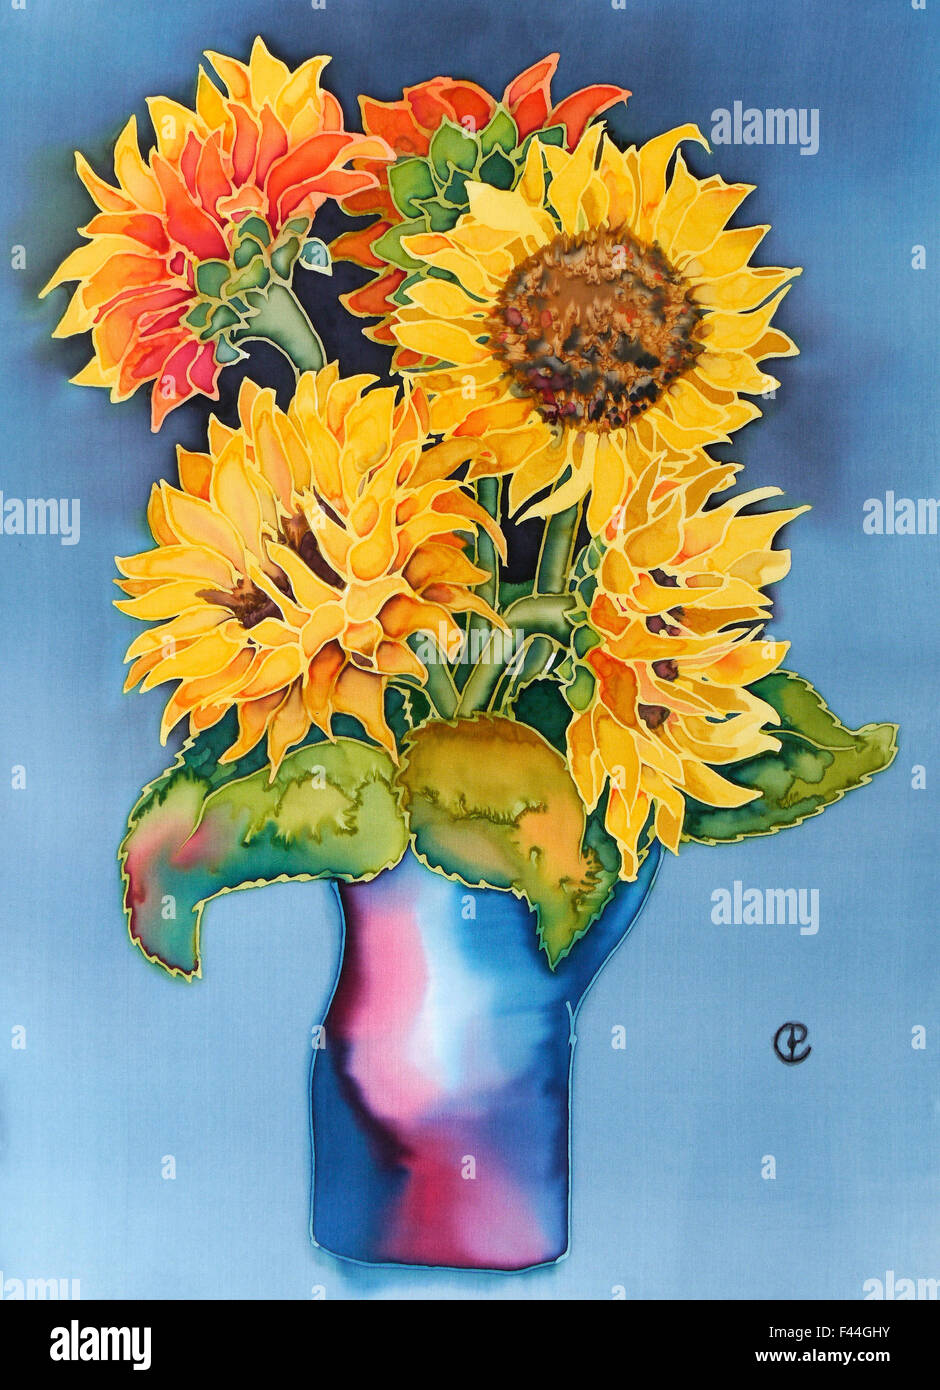 Photographie de peinture sur soie d'un pot de tournesols jaunes contre fond bleu à l'aide de colorants fixes vapeur par Paula Chapman. Banque D'Images